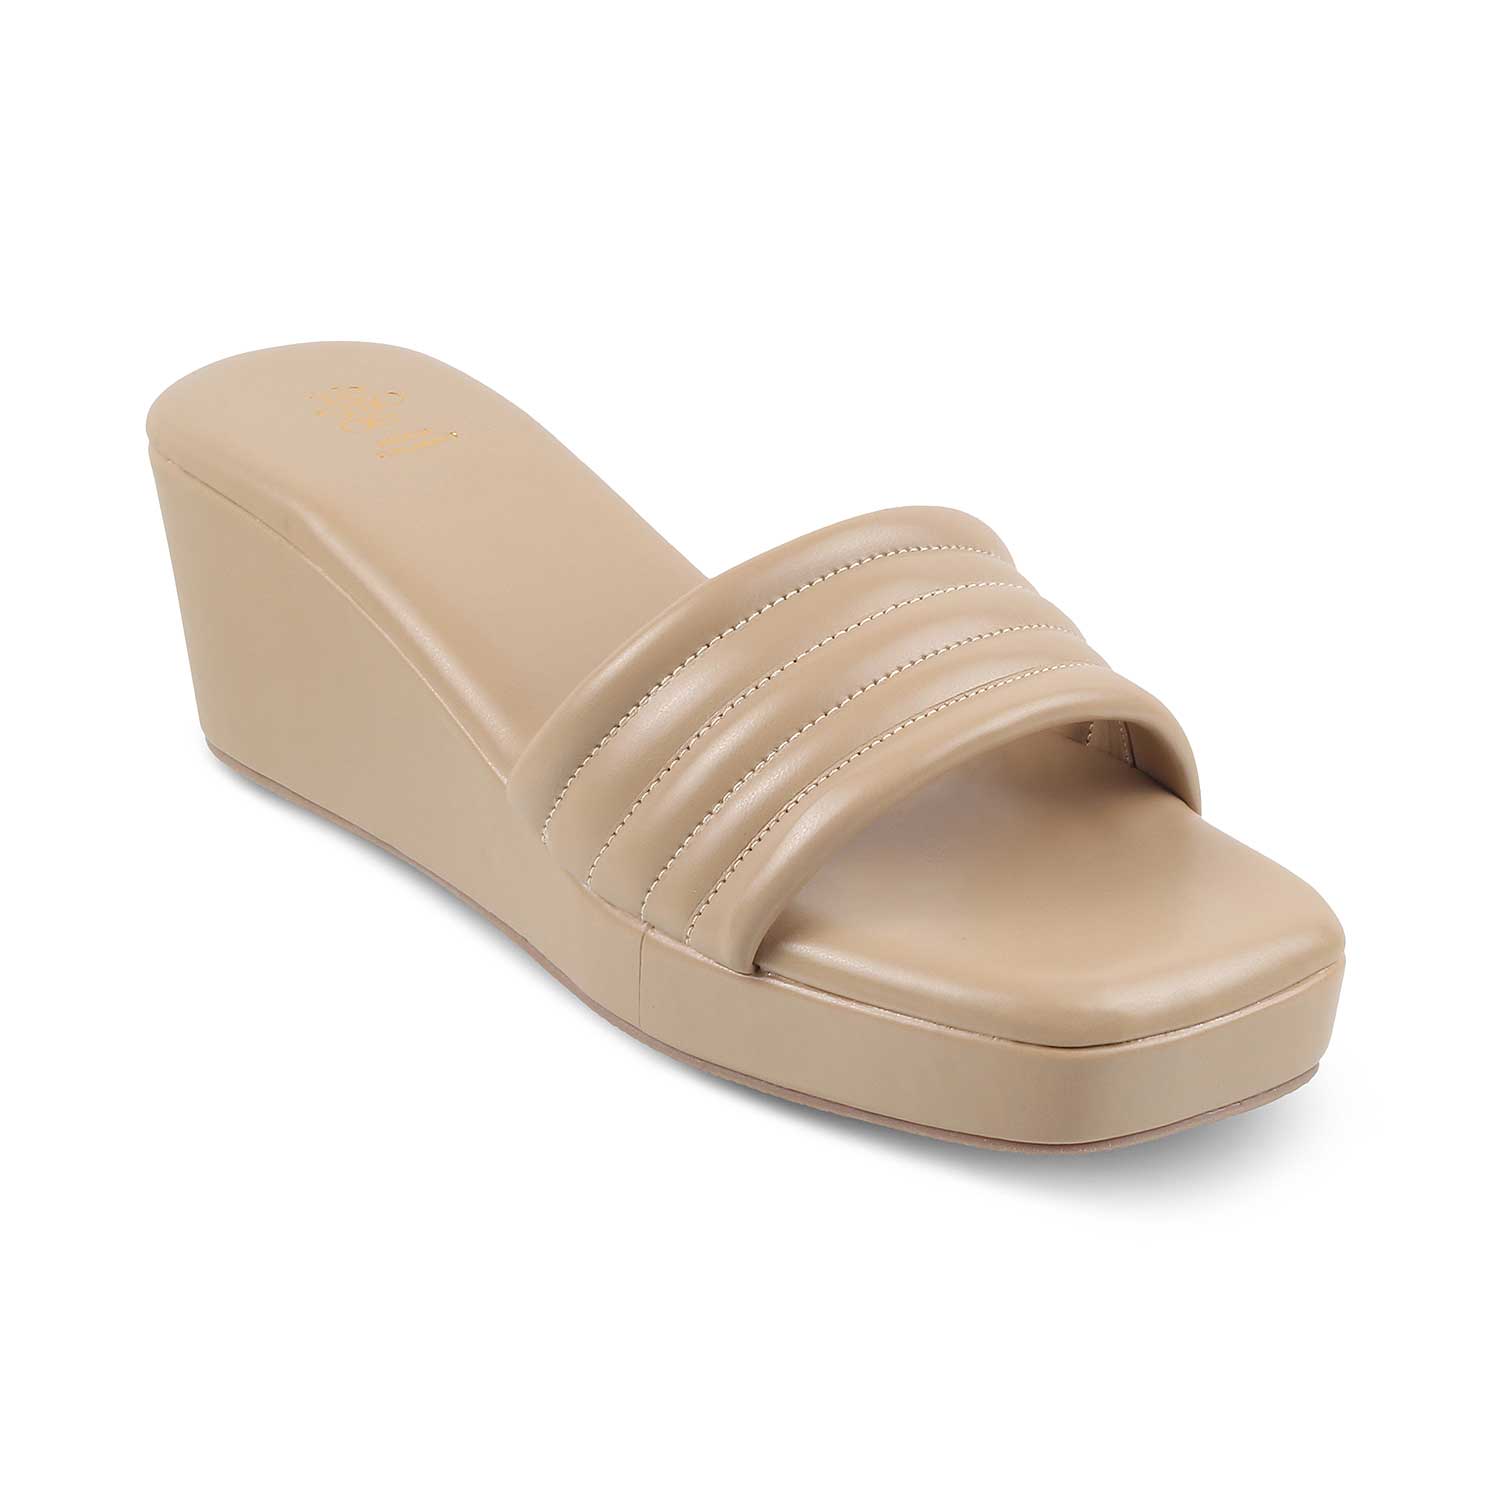 Tresmode-The Skyler Beige Women's Casual Wedge Heel Sandals Tresmode-Tresmode